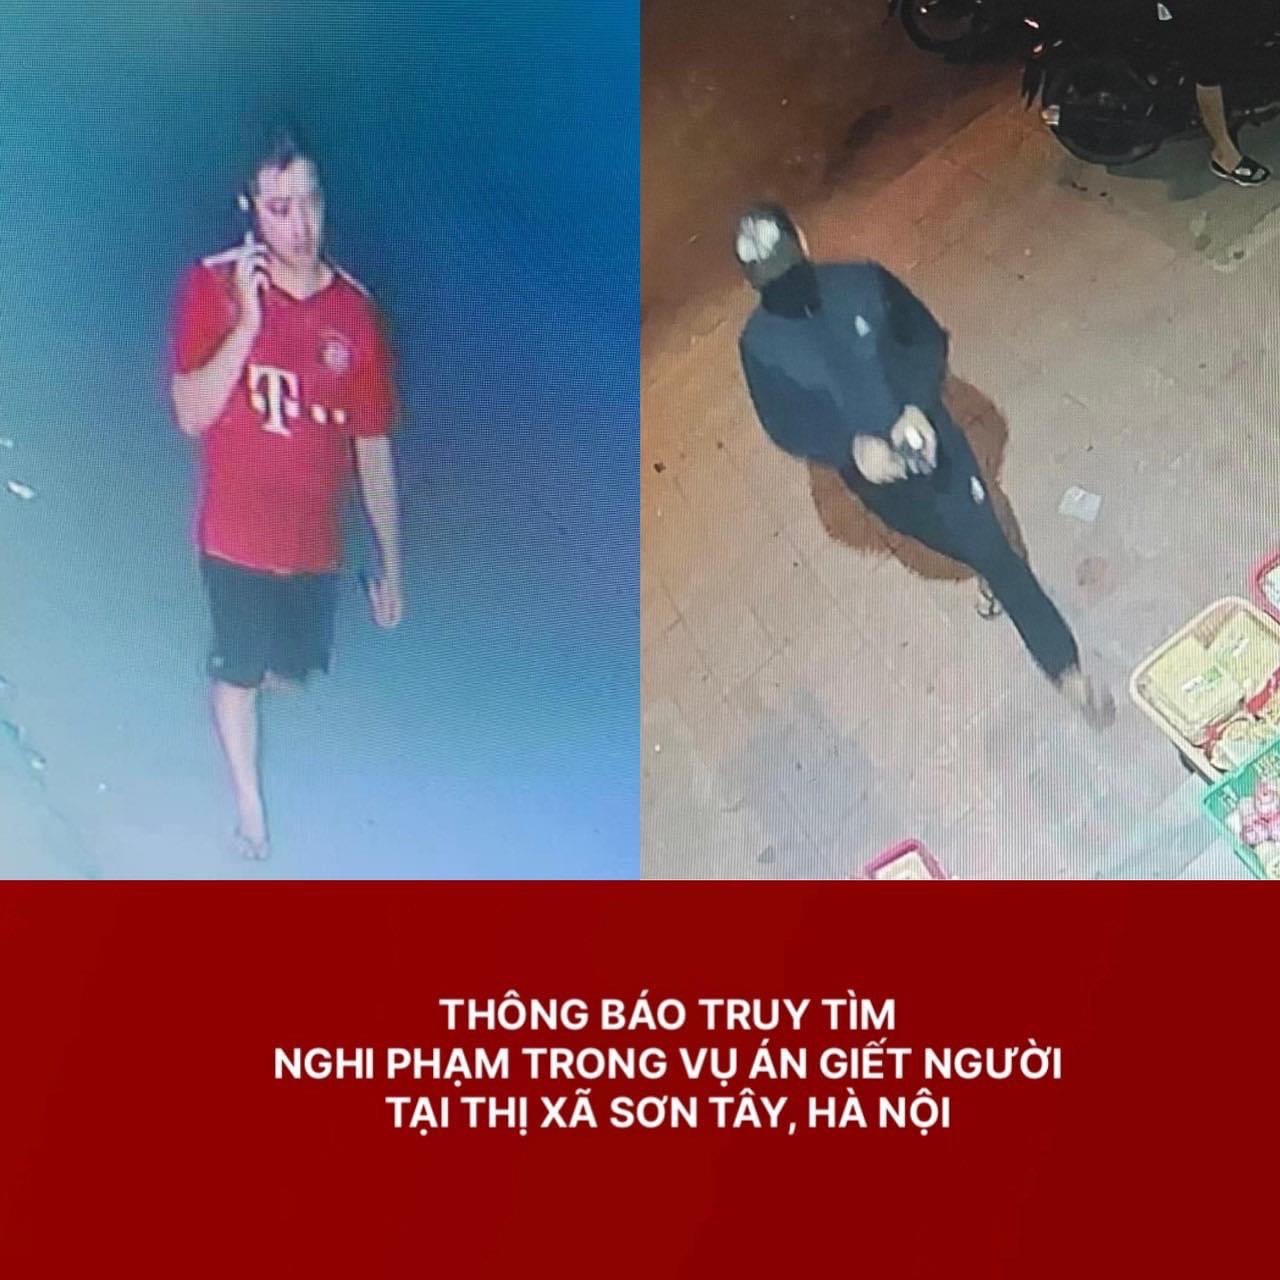 Hà Nội: Thông báo truy tìm nghi phạm vụ giết người tại thị xã Sơn Tây - Ảnh 1.